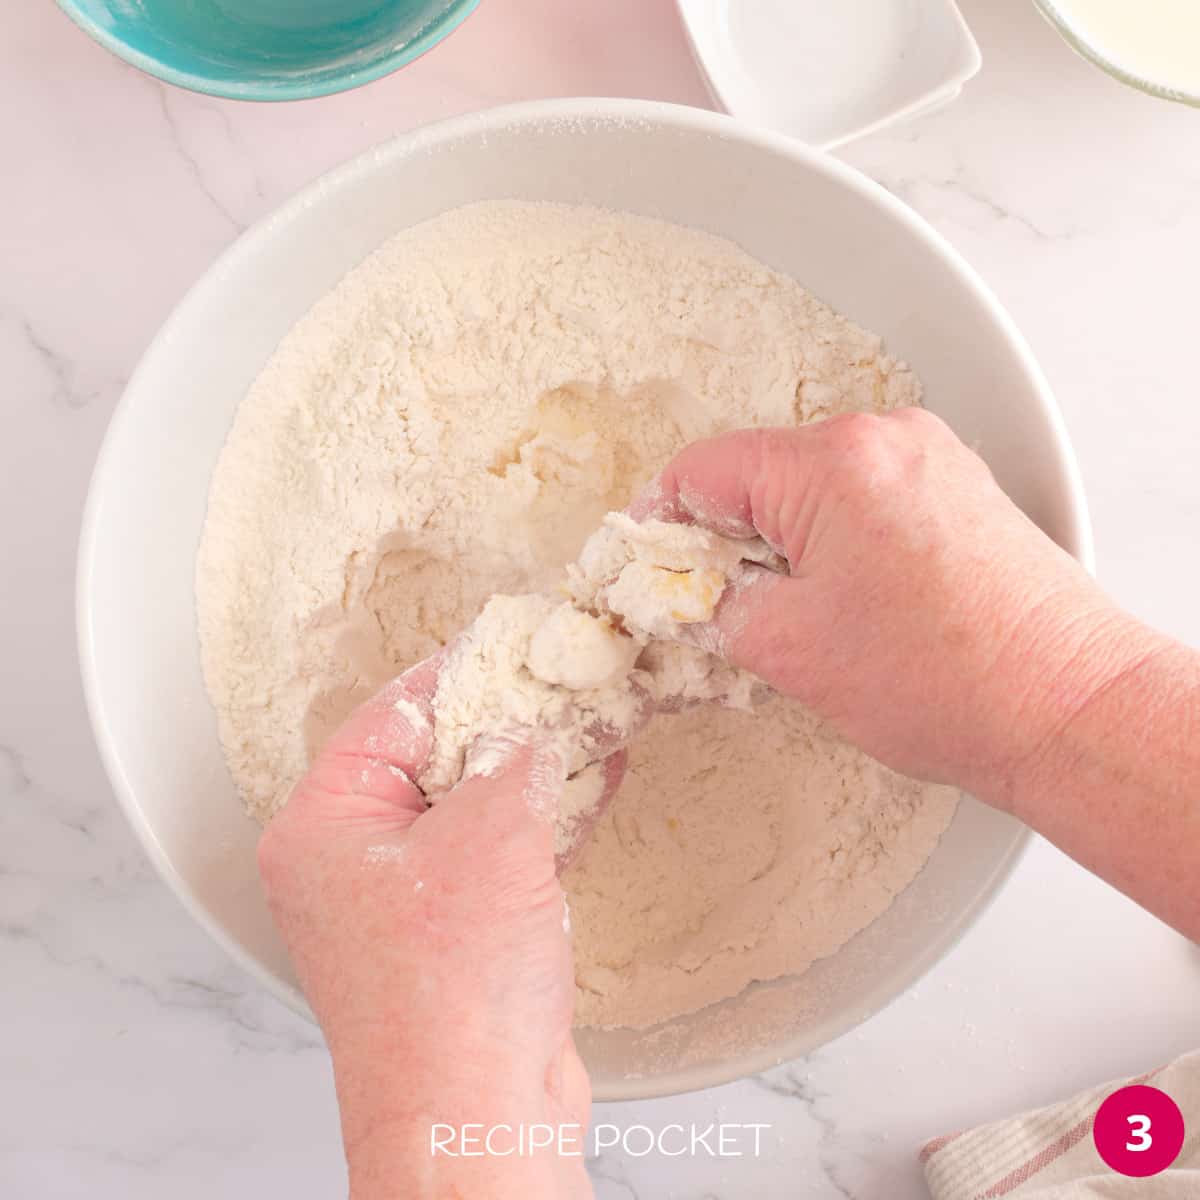 Hands crumbling butter into flour.